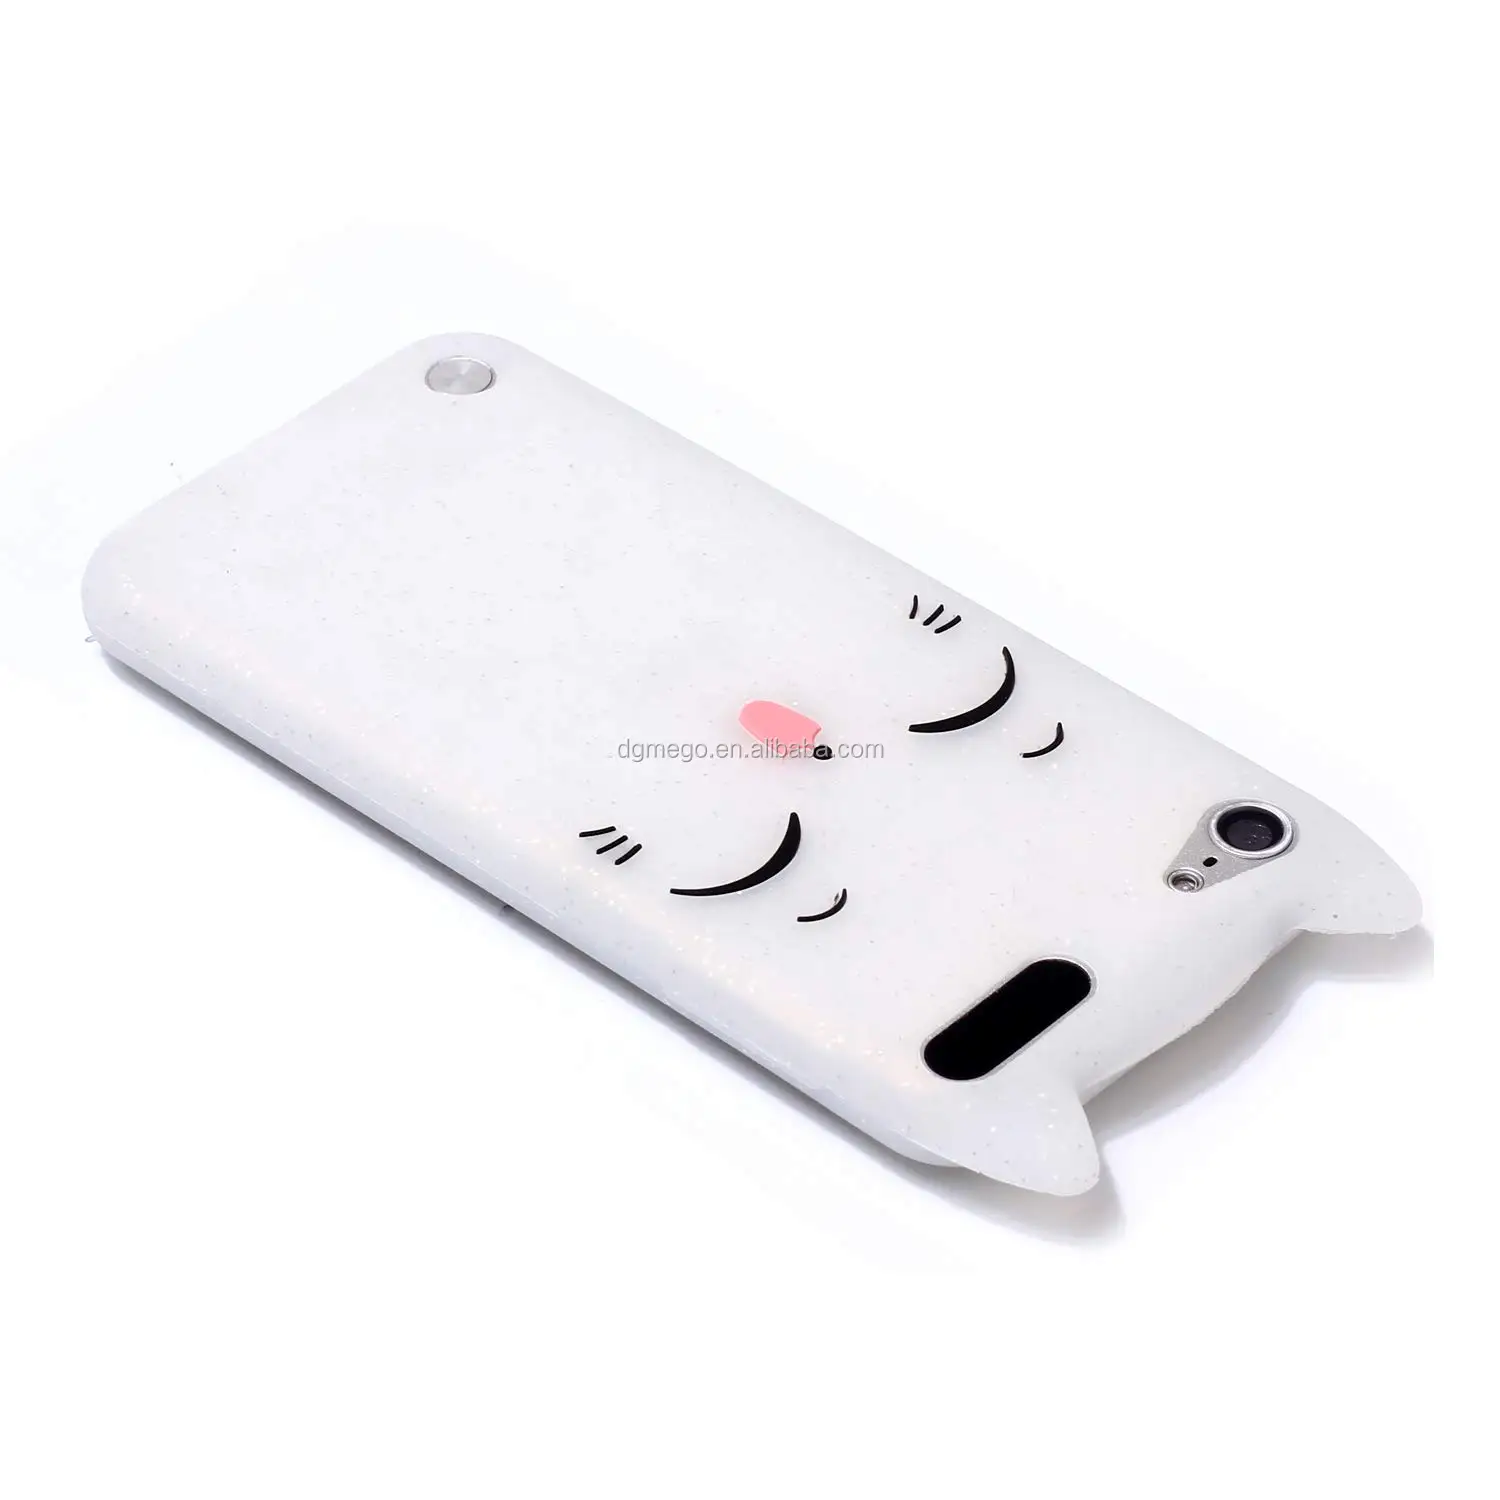 可爱的3d卡通小猫白猫柔软的硅橡胶手机套 适用于ipod Touch 5代 Ipod Buy 硅手机壳 可爱手机壳 时尚硅胶手机壳product On